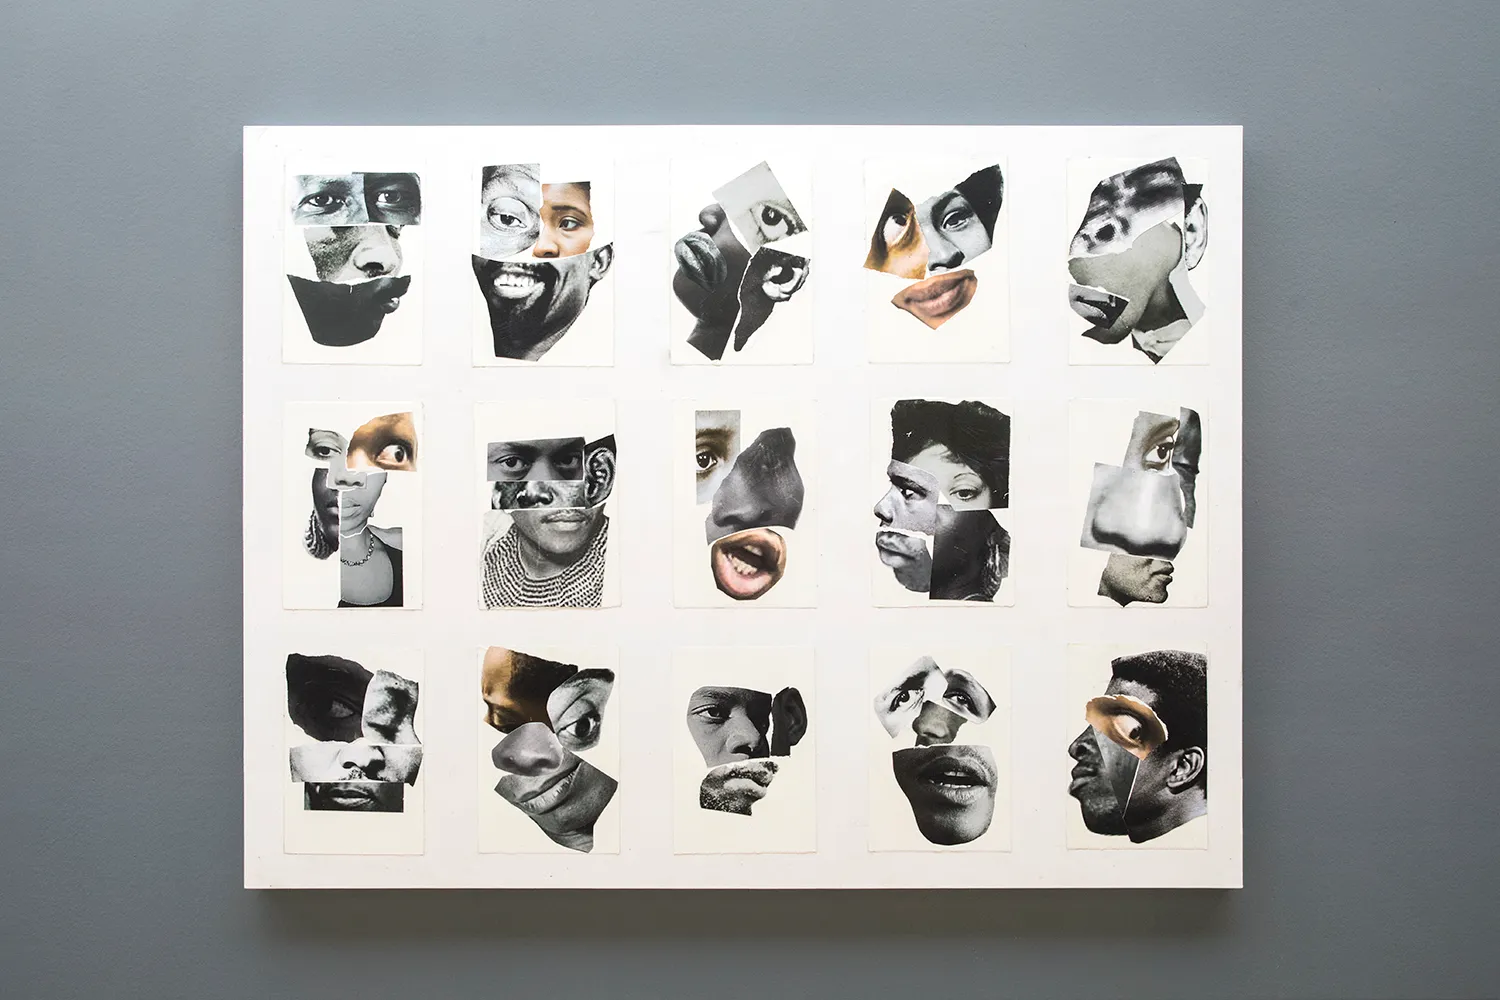 collages van gezichten met verschillende onderdelen (ogen, oren, mond enz.), die in totaal 15 zwart-wit portretten vormen, aangebracht op een doek.